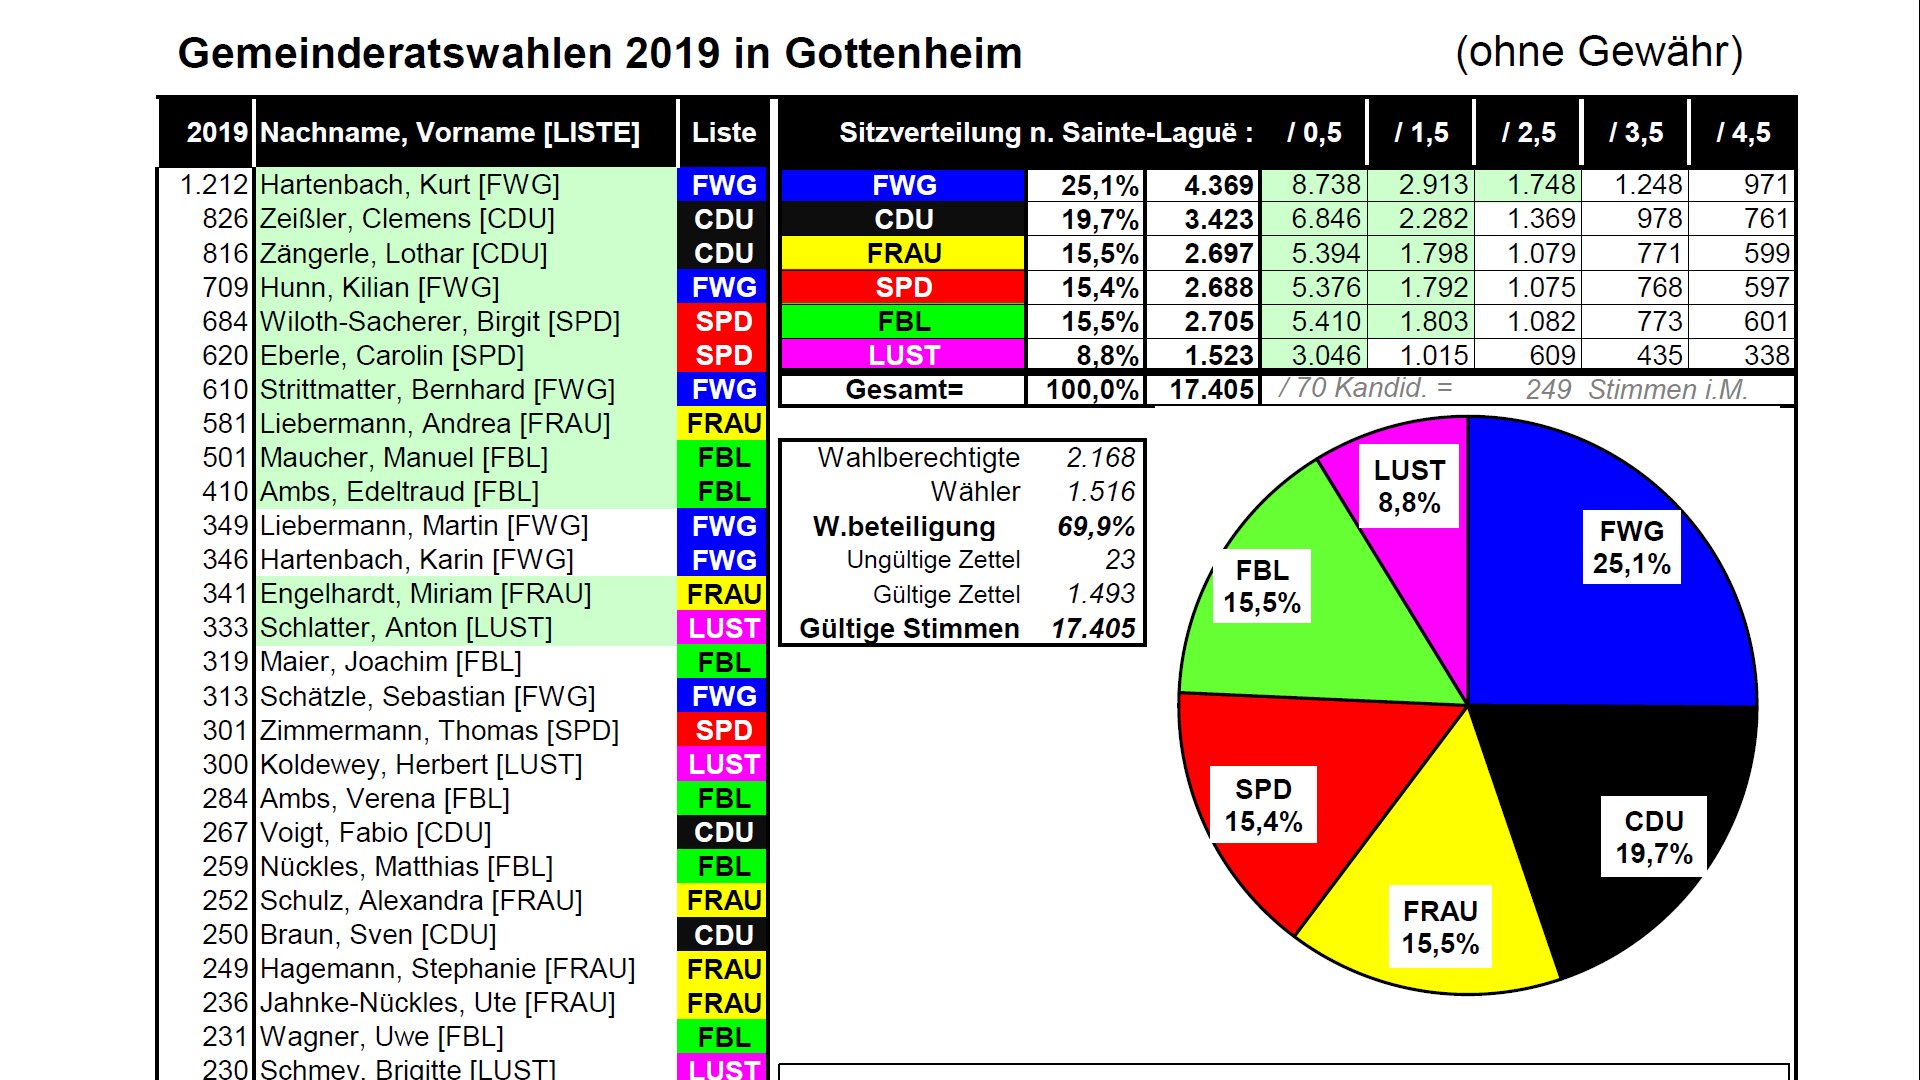 Gemeinderatswahlergebnis Gottenheim